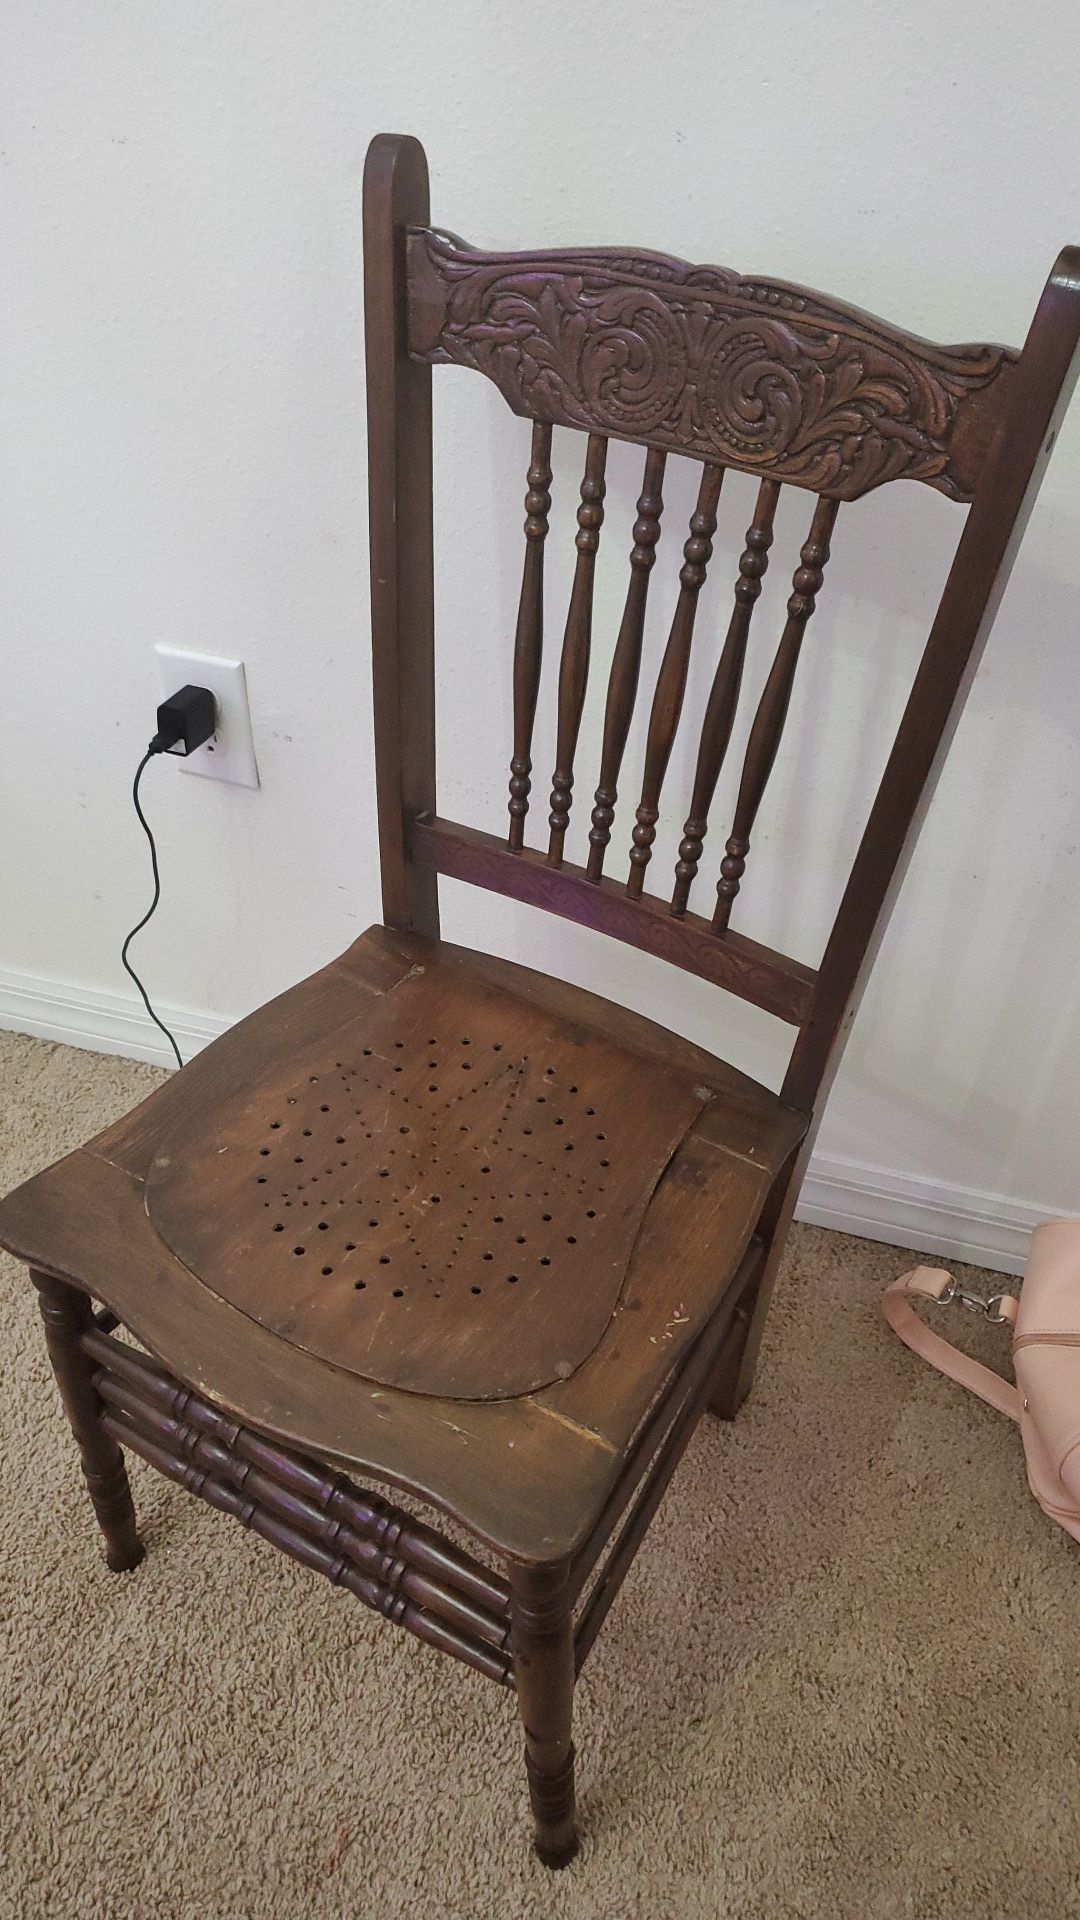 GORGEOUS antique brown chair